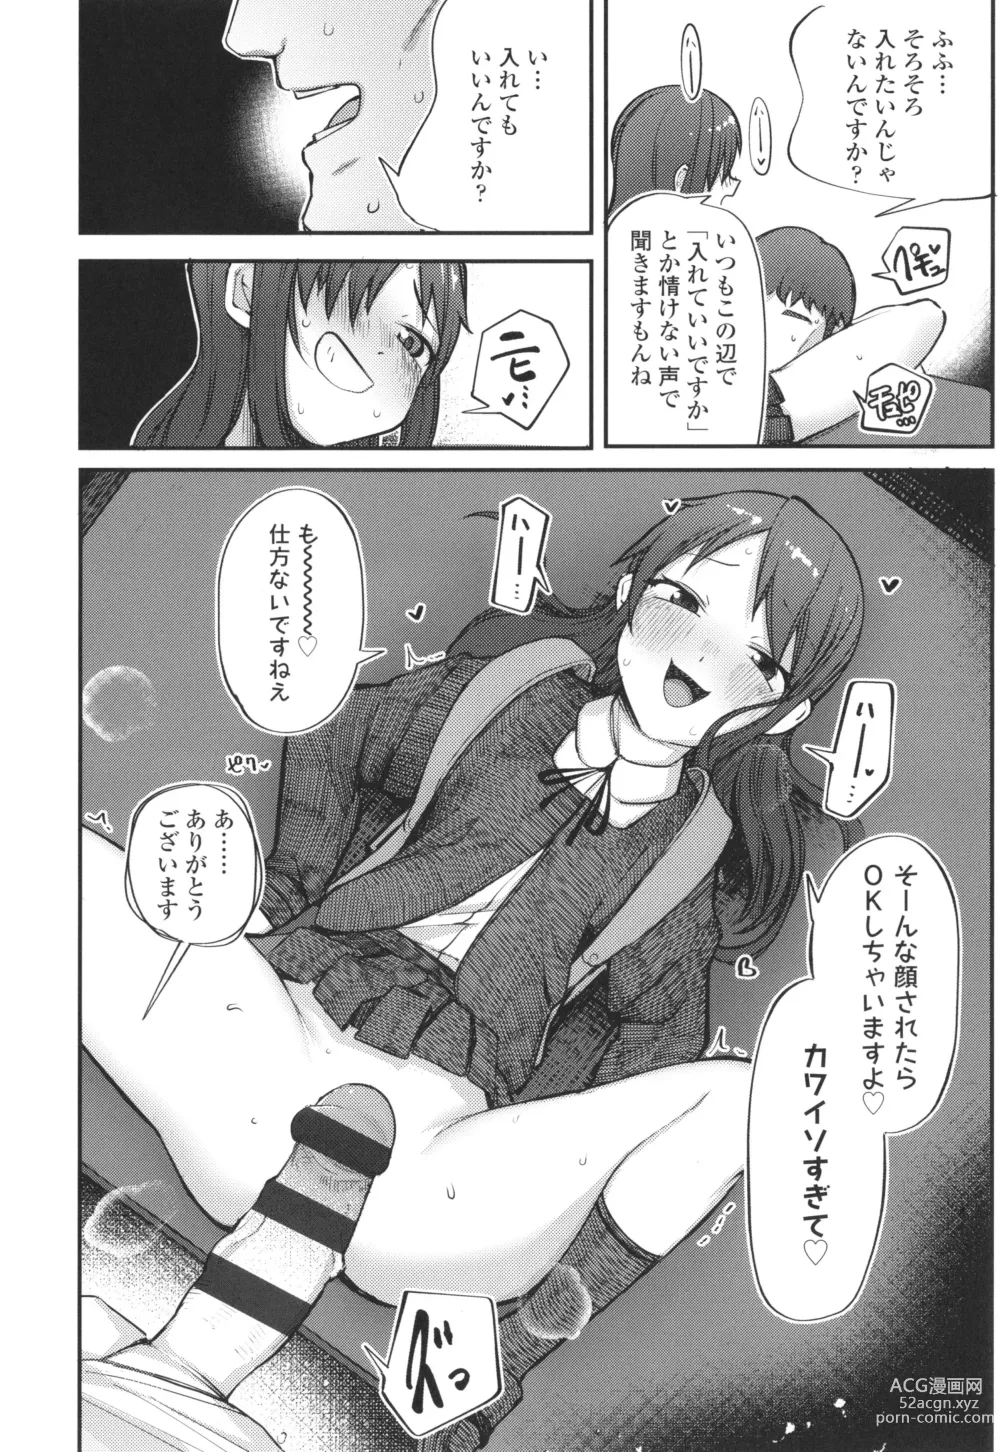 Page 9 of manga Dekireba Shiranaide ite Hoshii Koto